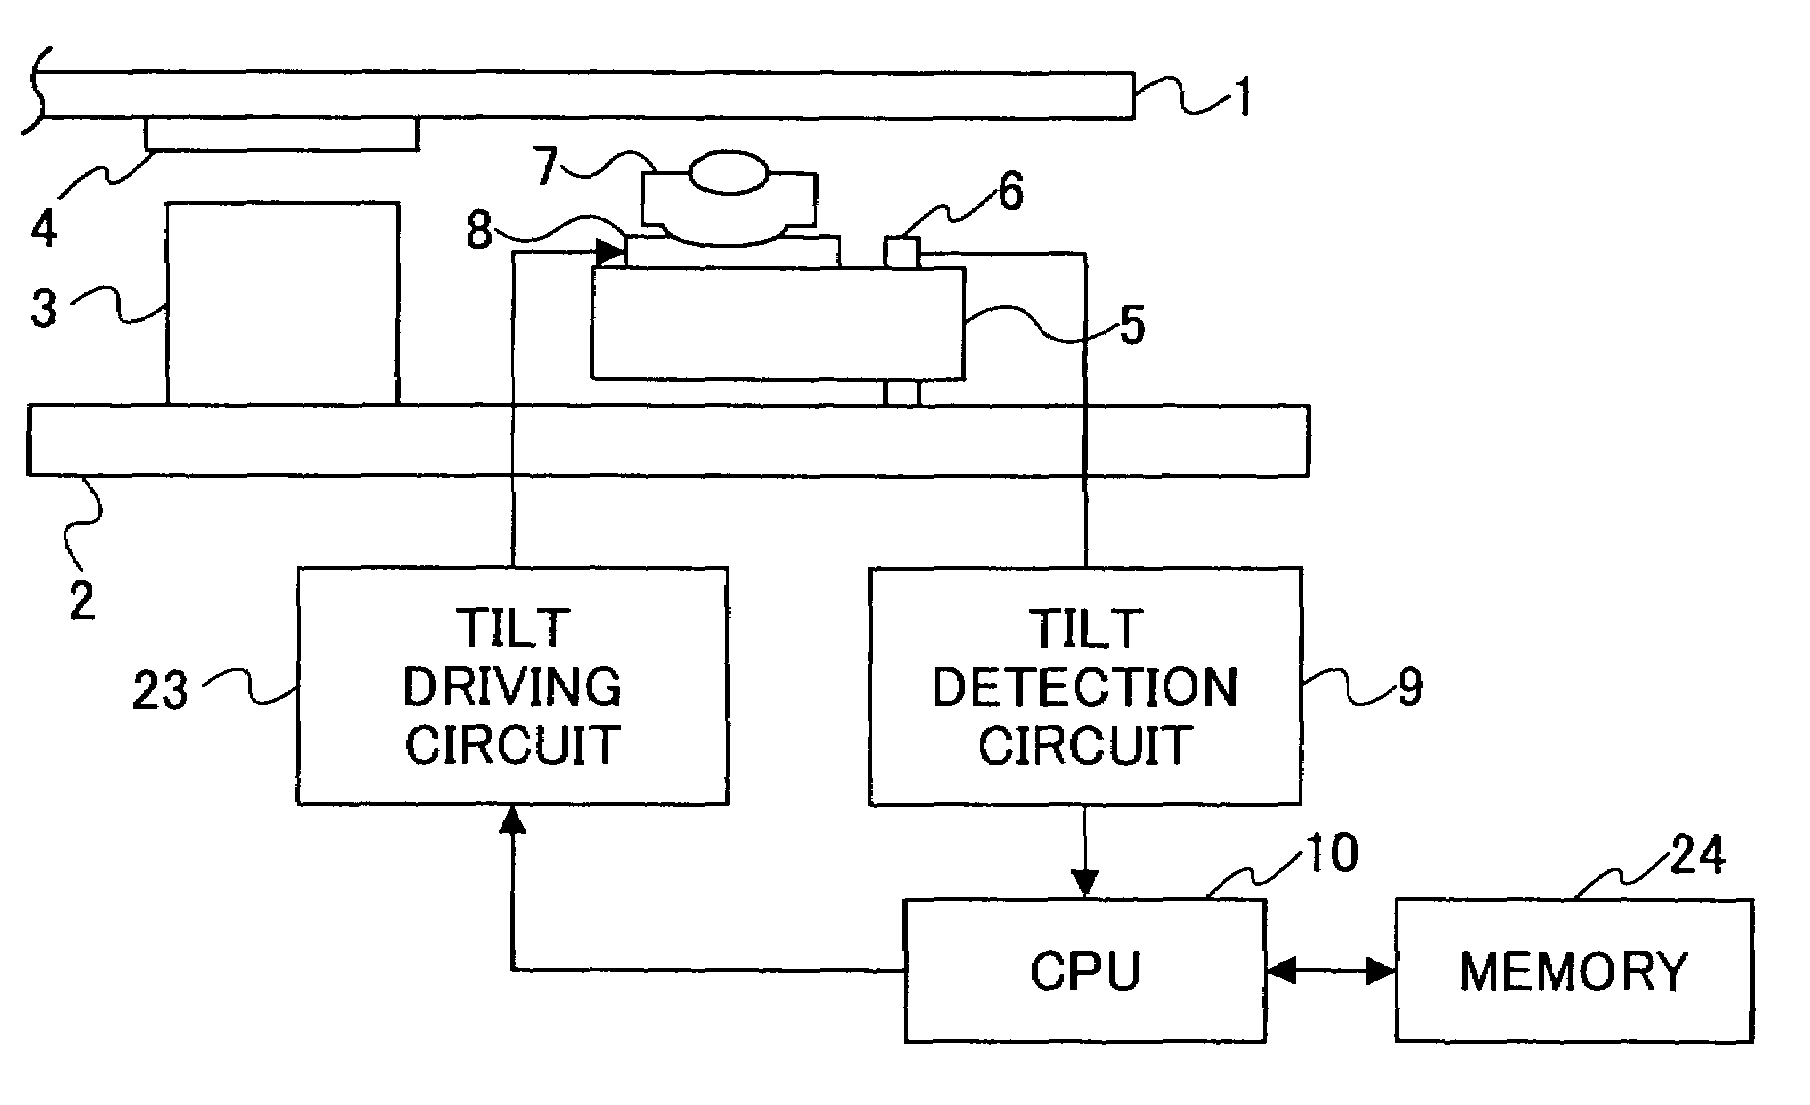 Optical disk device and method of adjusting tilt control amount